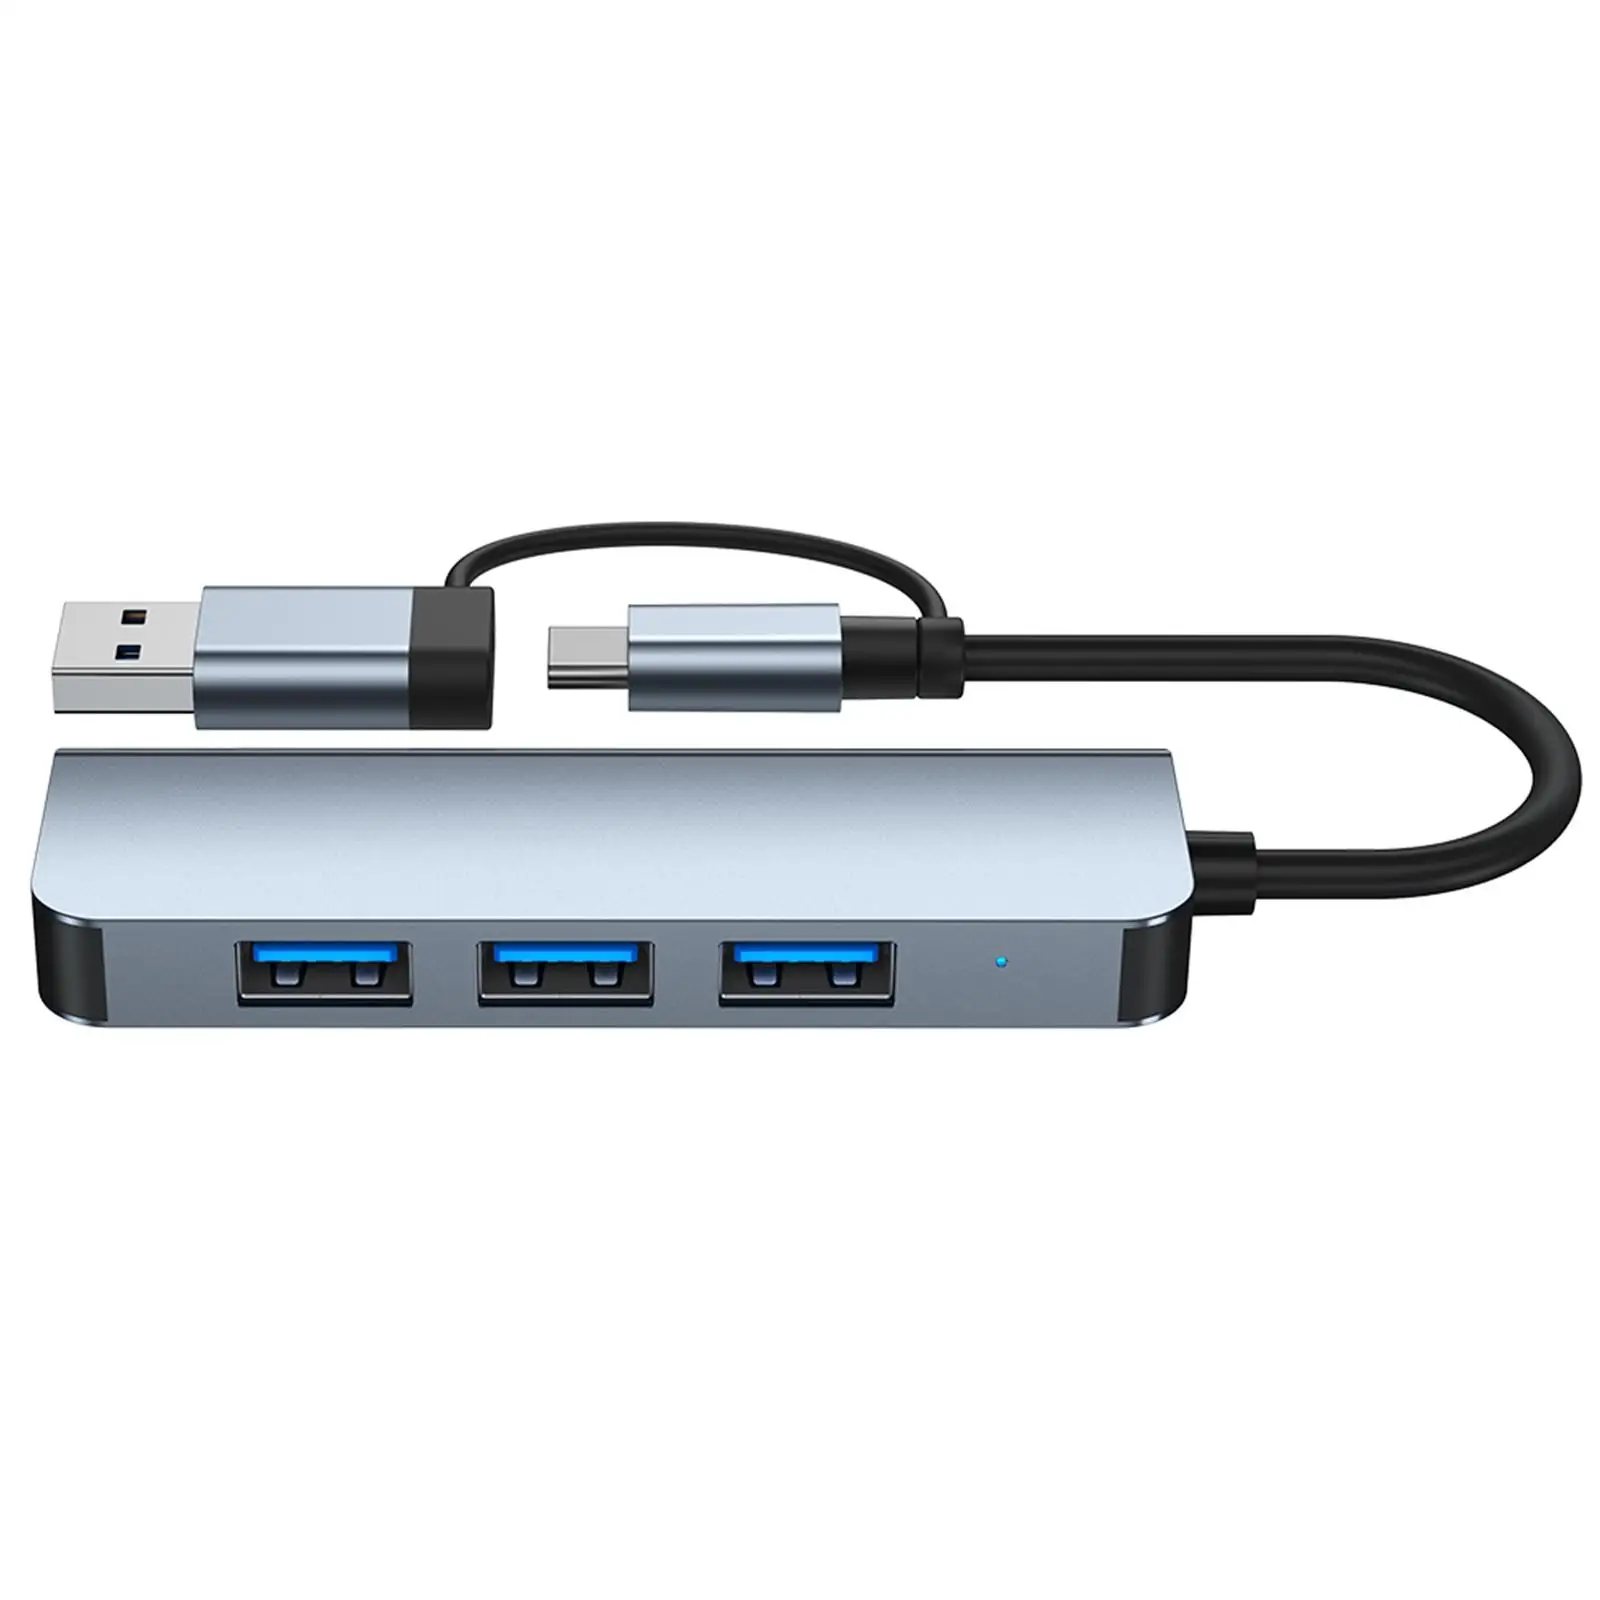 USB 3.0 Hub c Converter Expander Station Portable Multiport Ultra Slim Docking Data Expansion Splitter for Notebook Laptop